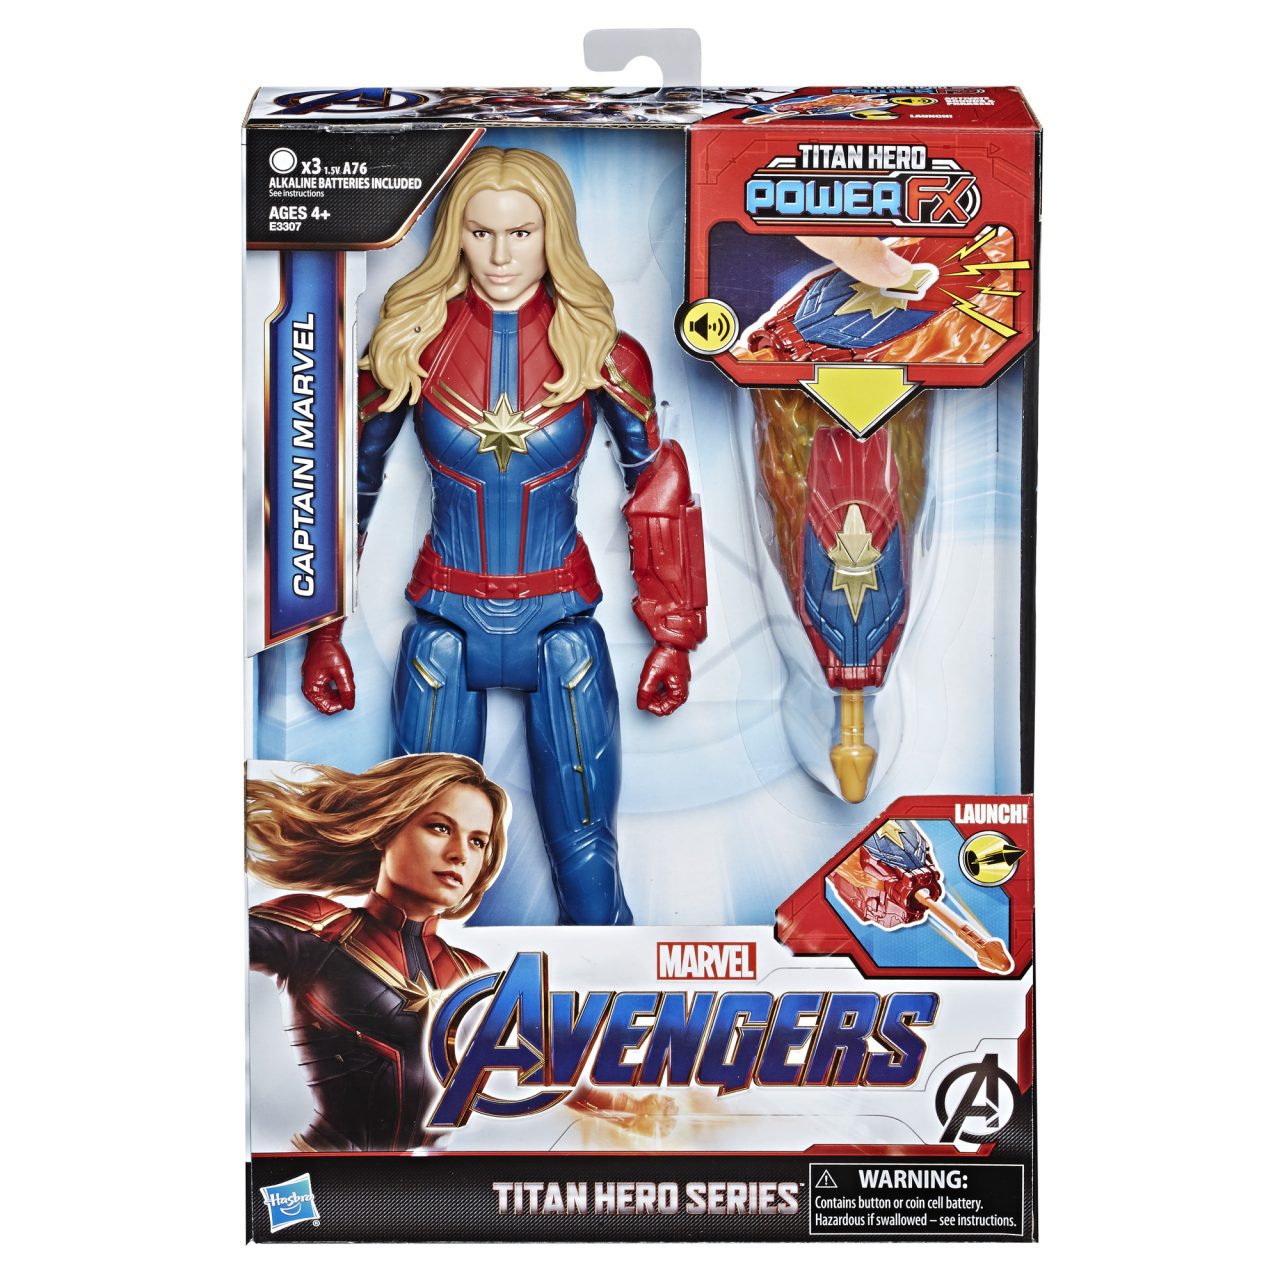 MARVEL AVENGERS: ENDGAME TITAN HERO POWER FX 12-INCH Figures - Captain Marvel